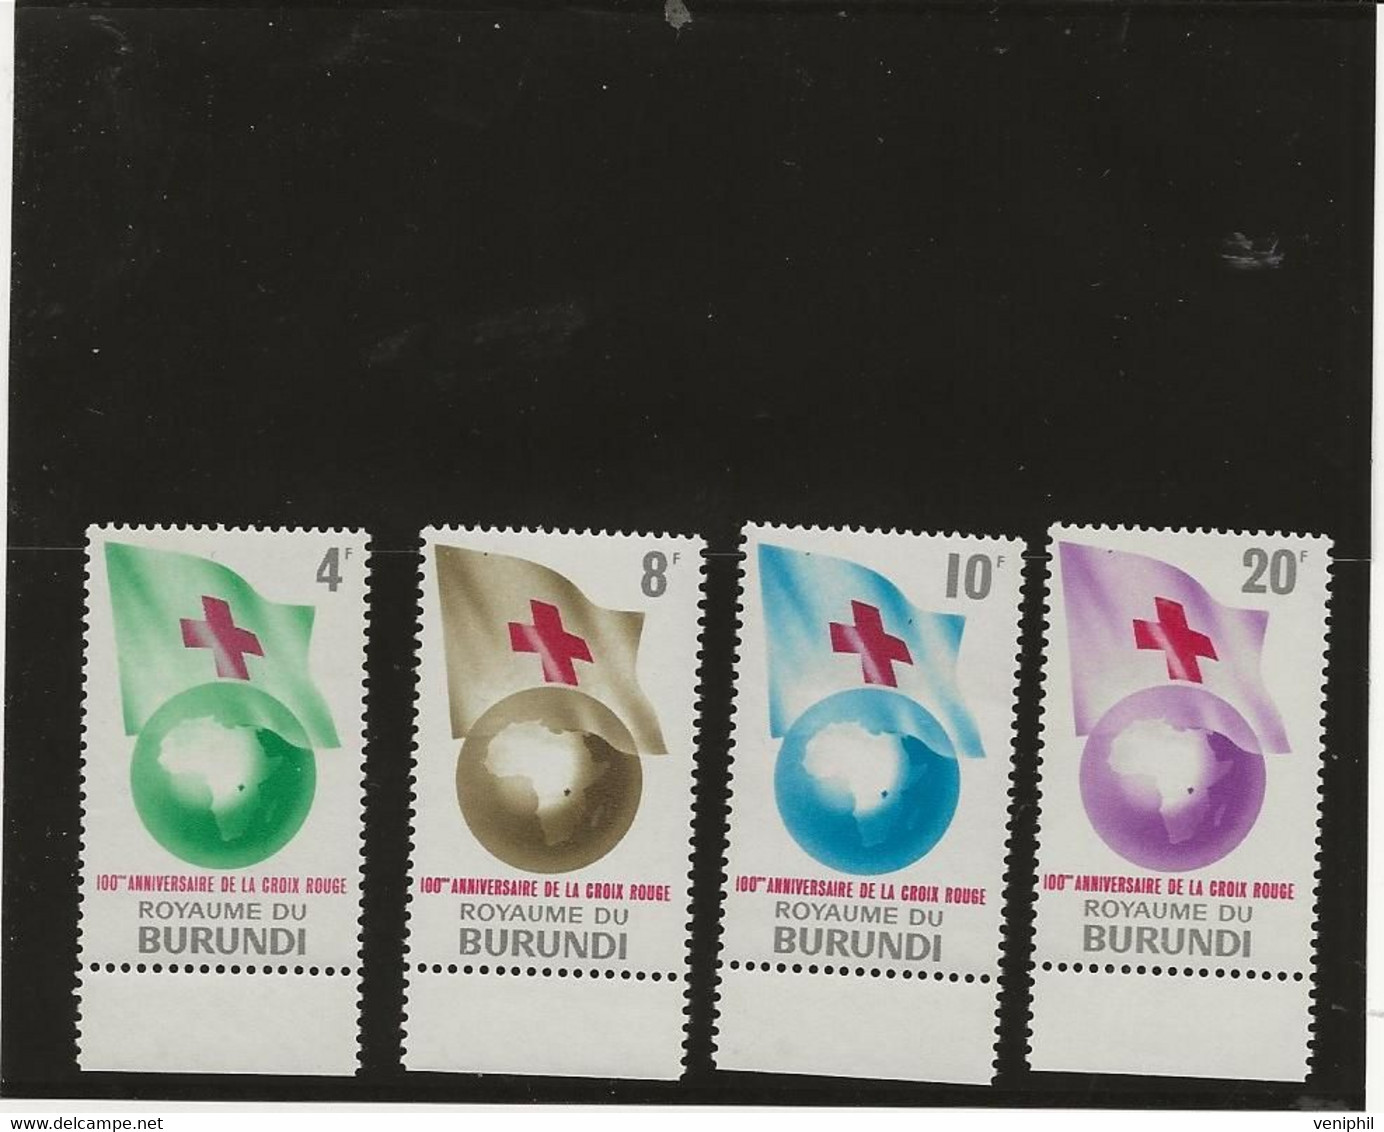 BURUNDI -TIMBRES CROIX ROUGE N°58 A 61 NEUF SANS CHARNIERE -ANNEE 1963 - Dominicaine (République)